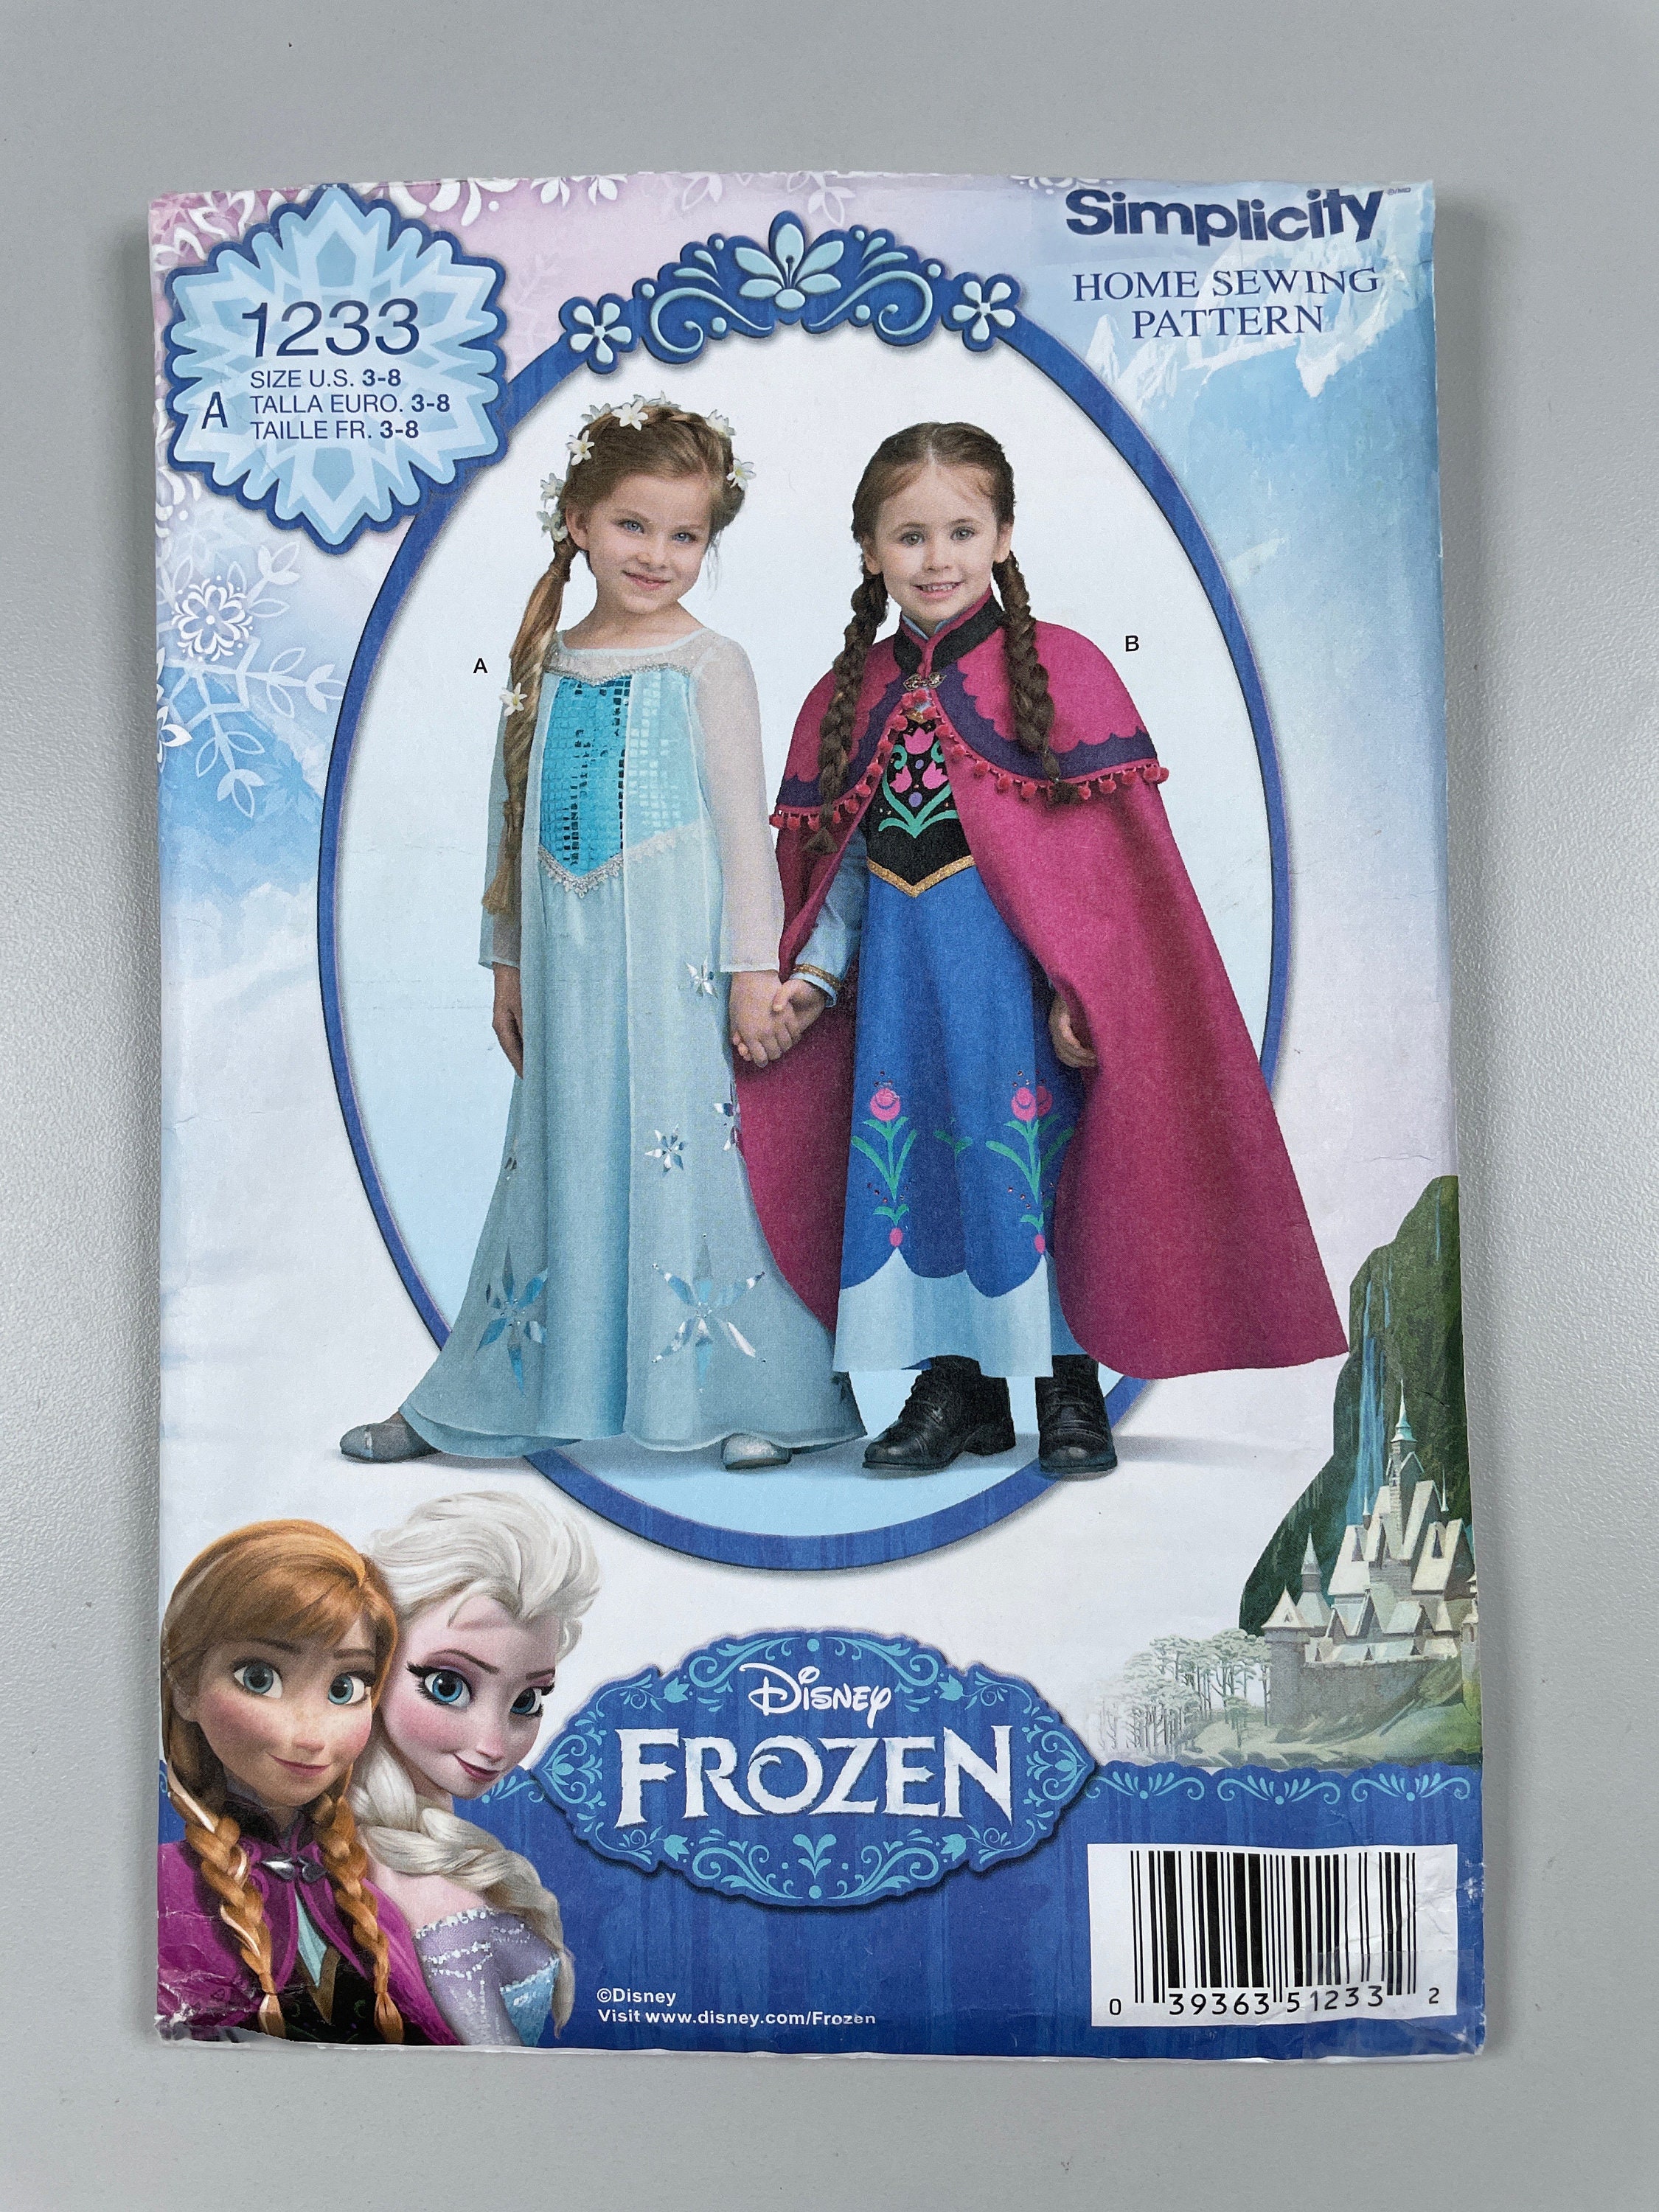 Filles Elsa Costume Robe de fête Tenue de fantaisie Déguisement Reine des  neiges Princesse Halloween Robe de carnaval pour 3-8 ans